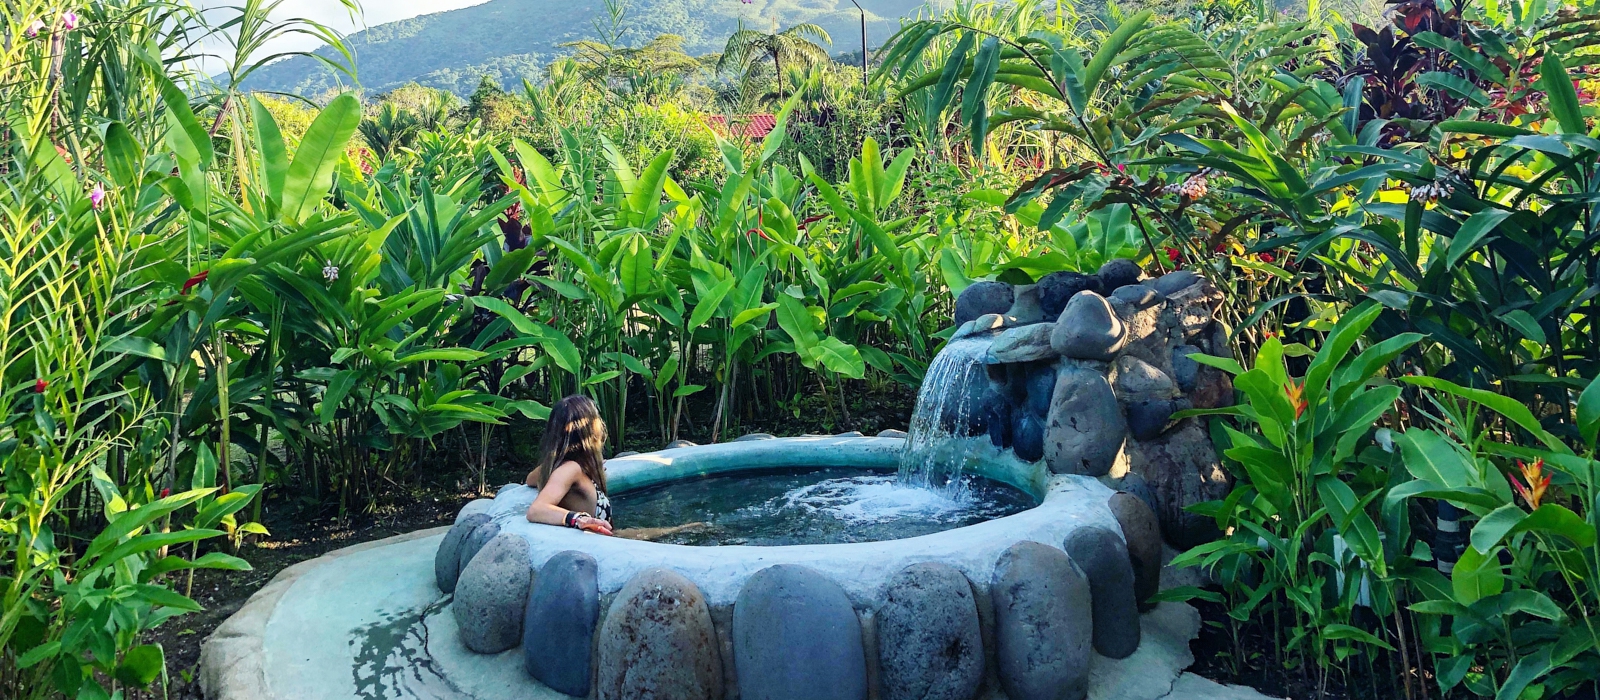 10 Day Luxury Honeymoon - Costa Rica